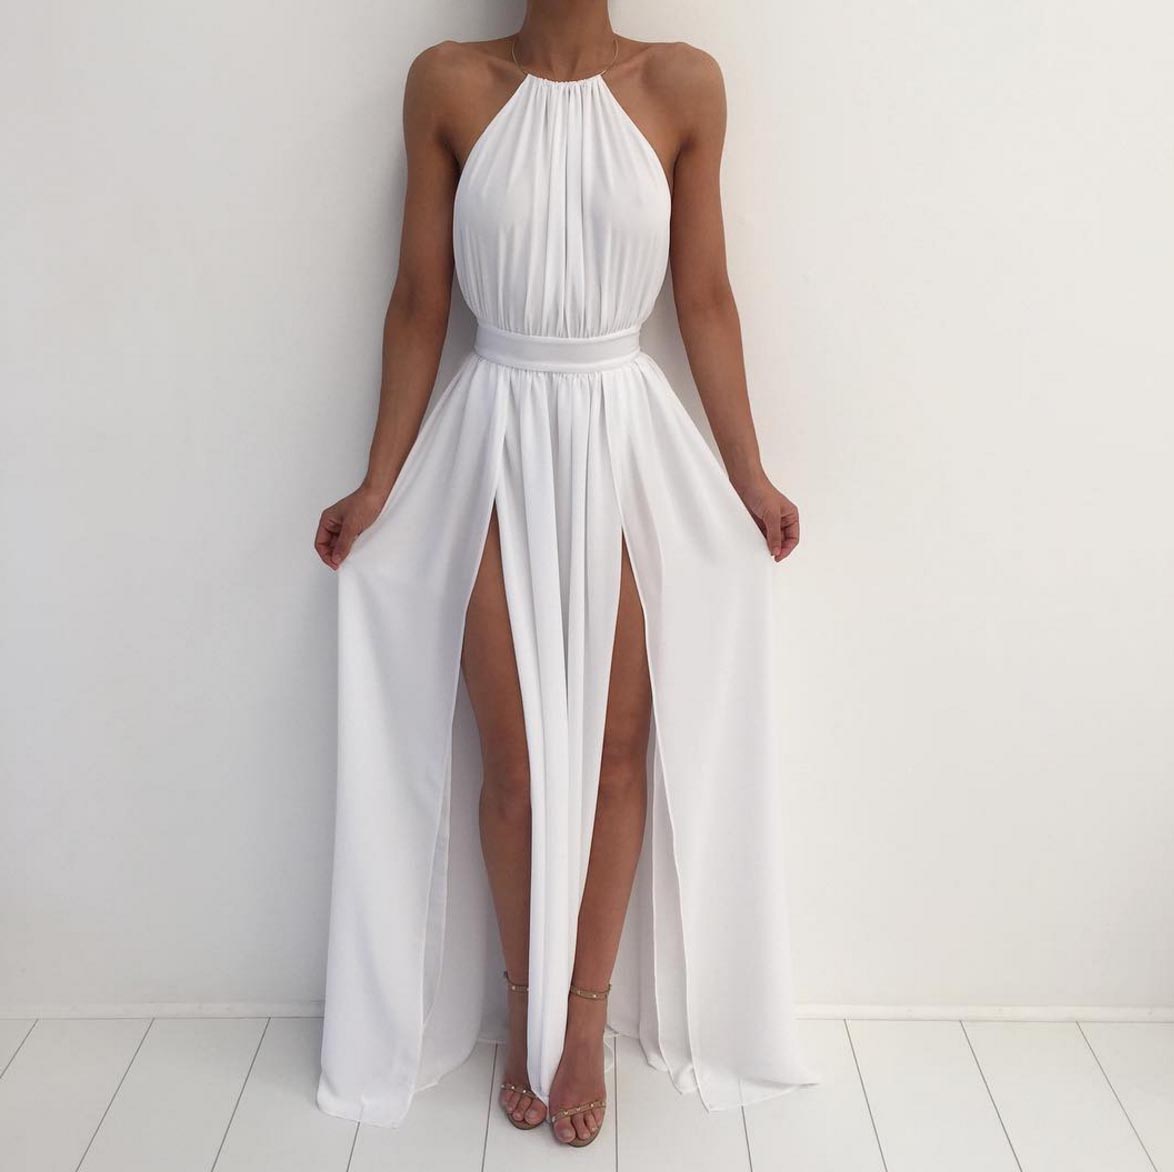 white dress for